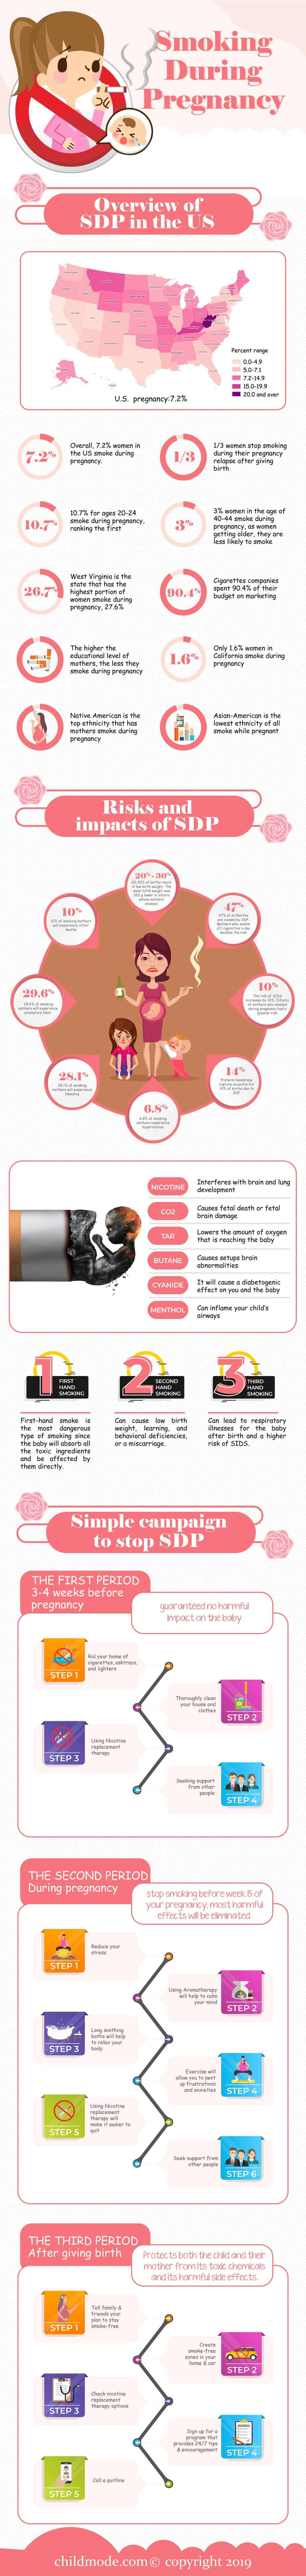 Smoking-During-pregnancy-2